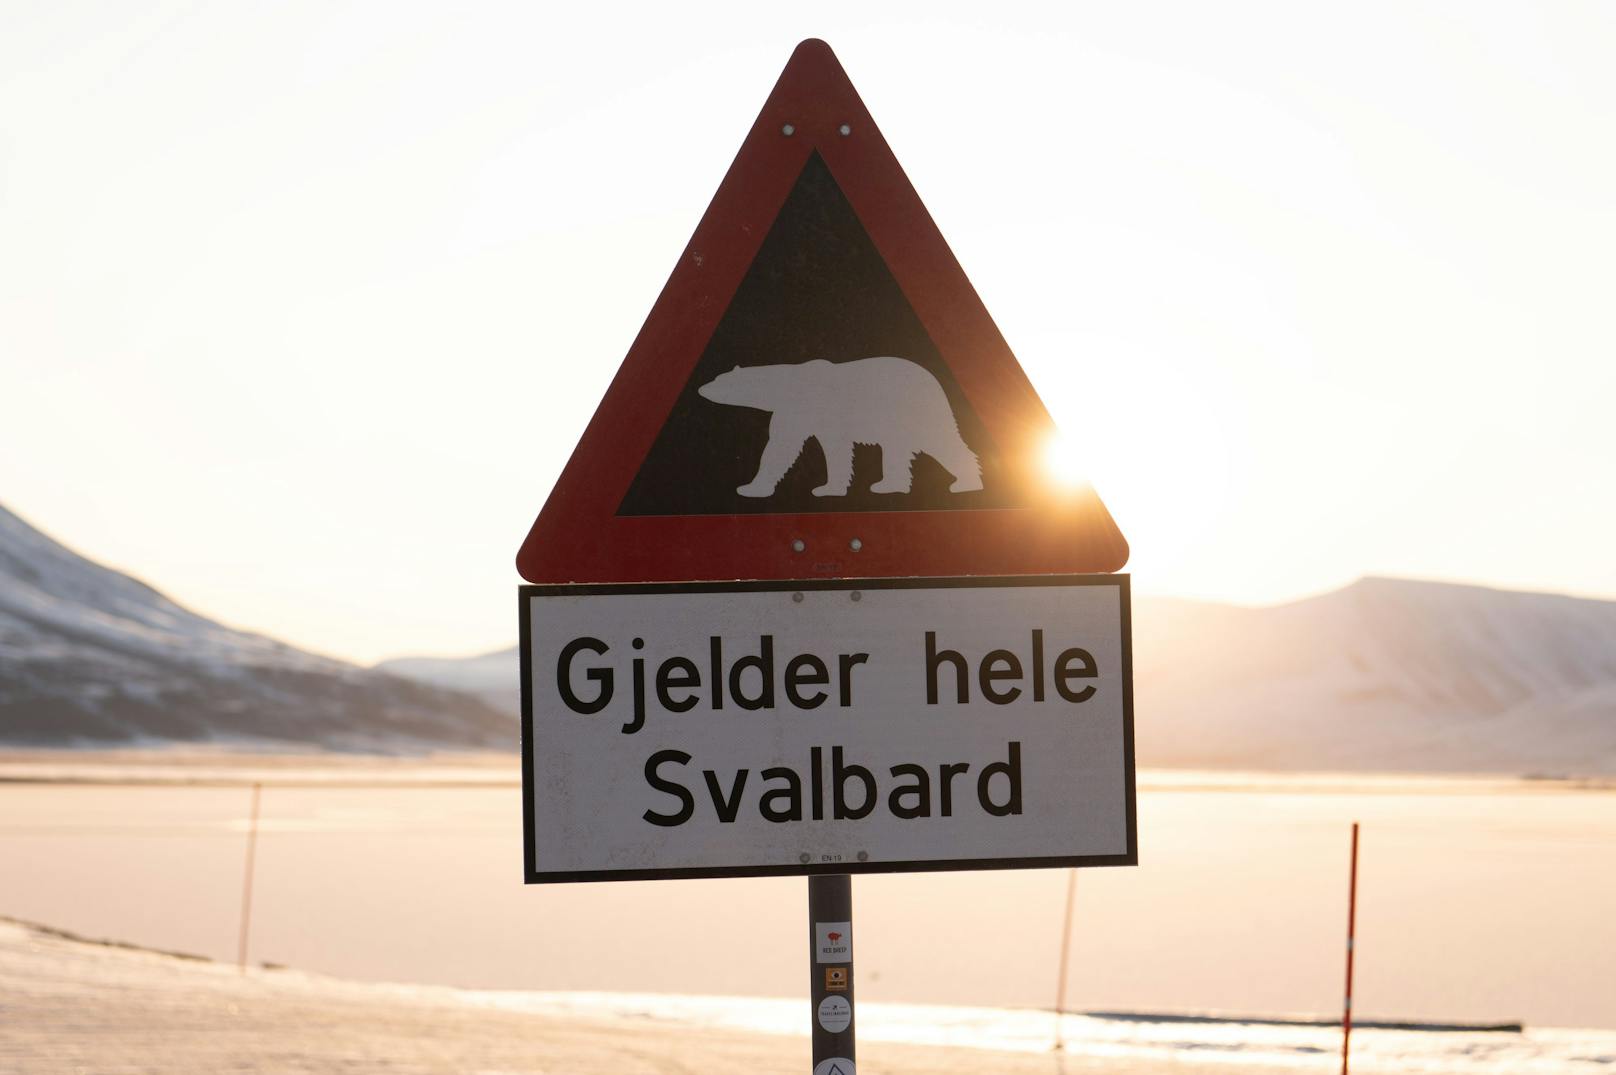 Ein skurriles Gesetz, das zu weiteren bizarren Verordnungen geführt hat: Jeder Bewohner von Longyearbyen muss eine Waffe tragen – falls er auf einen der Eisbären in der Gegend trifft.&nbsp;